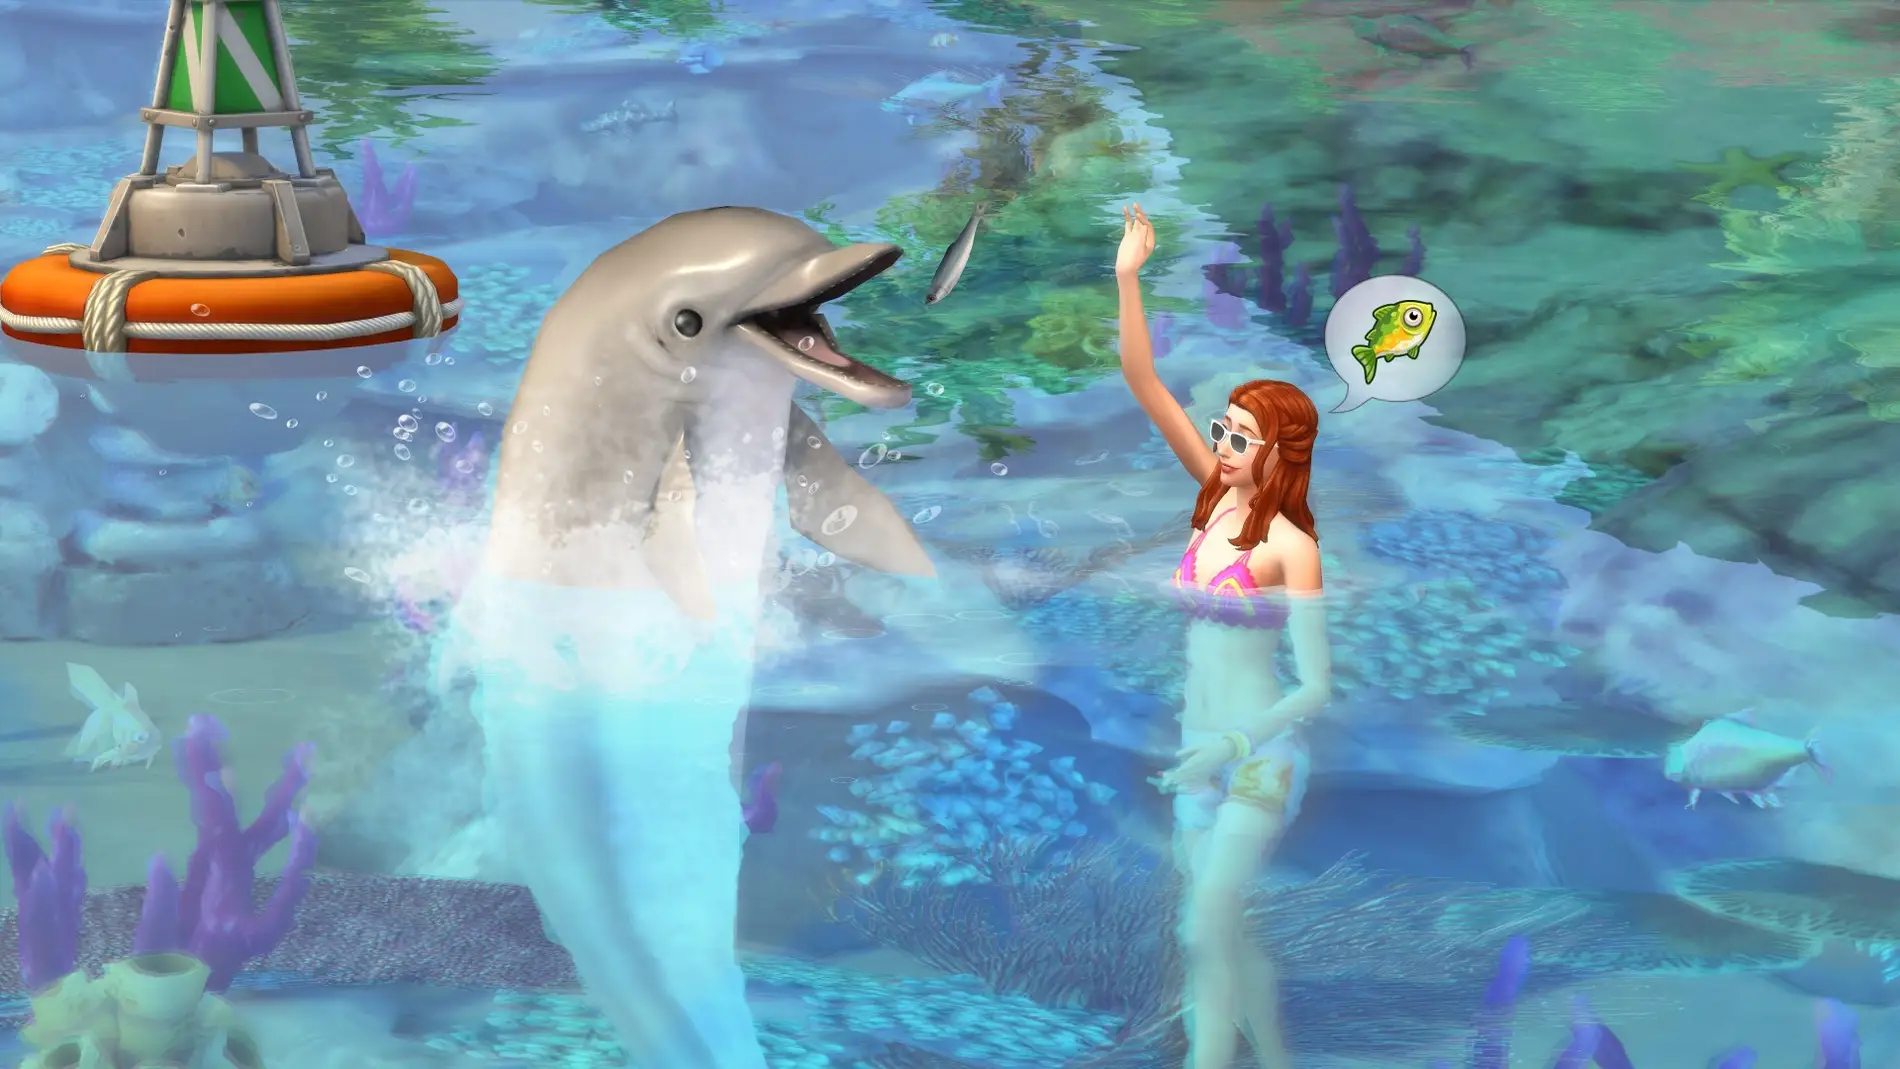 The Sims 4: Vida Isleña